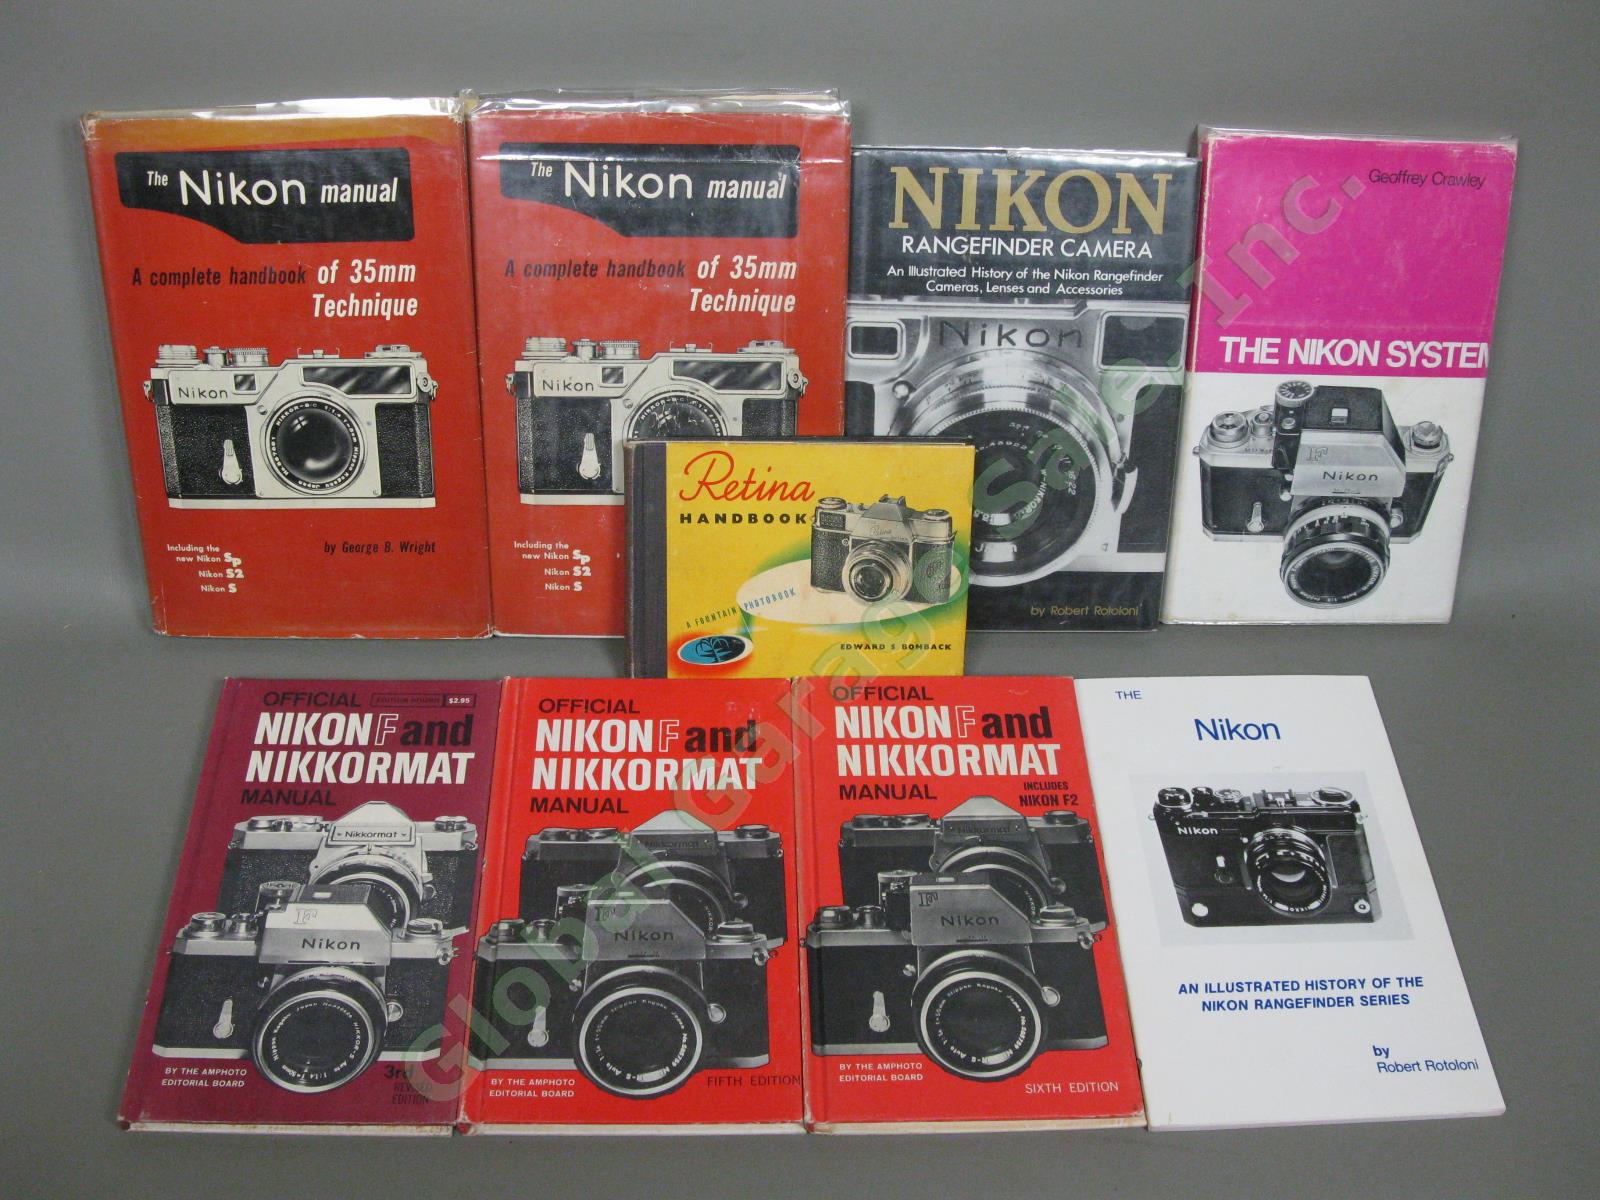 VTG Nikon Film Camera Books Manuals & Rangefinder Illustrated History SIGNED NR